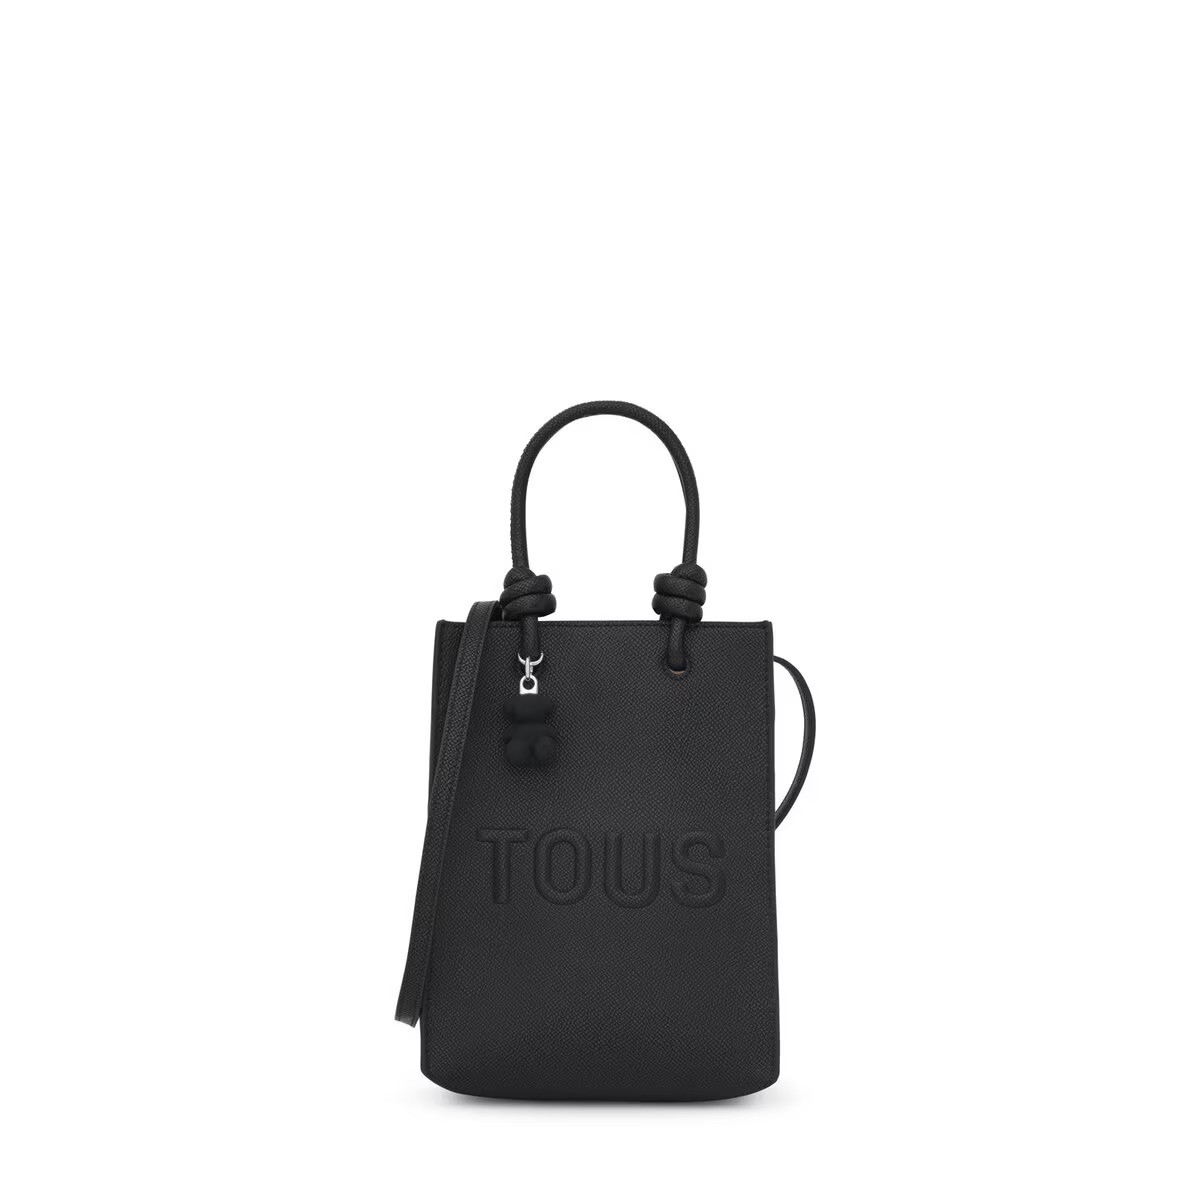 Pop TOUS La Rue New mini bag in black - per tutti